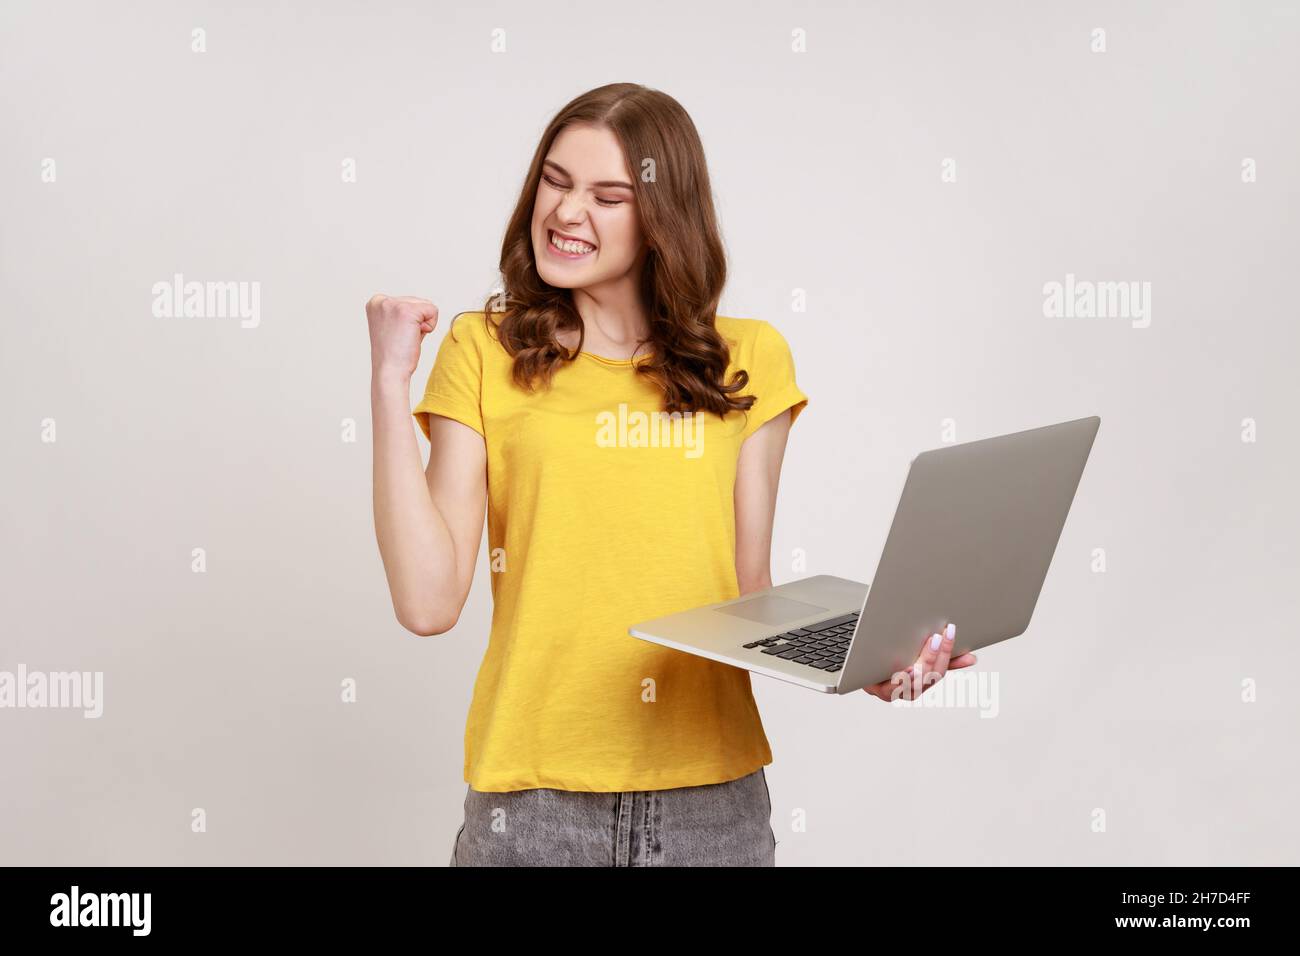 Portrait von begeisterten überglücklich Teenager Mädchen in gelben T-Shirt mit Faust und Laptop halten, jubeln Sieg, Online-Wetten. Innenaufnahme des Studios isoliert auf grauem Hintergrund. Stockfoto